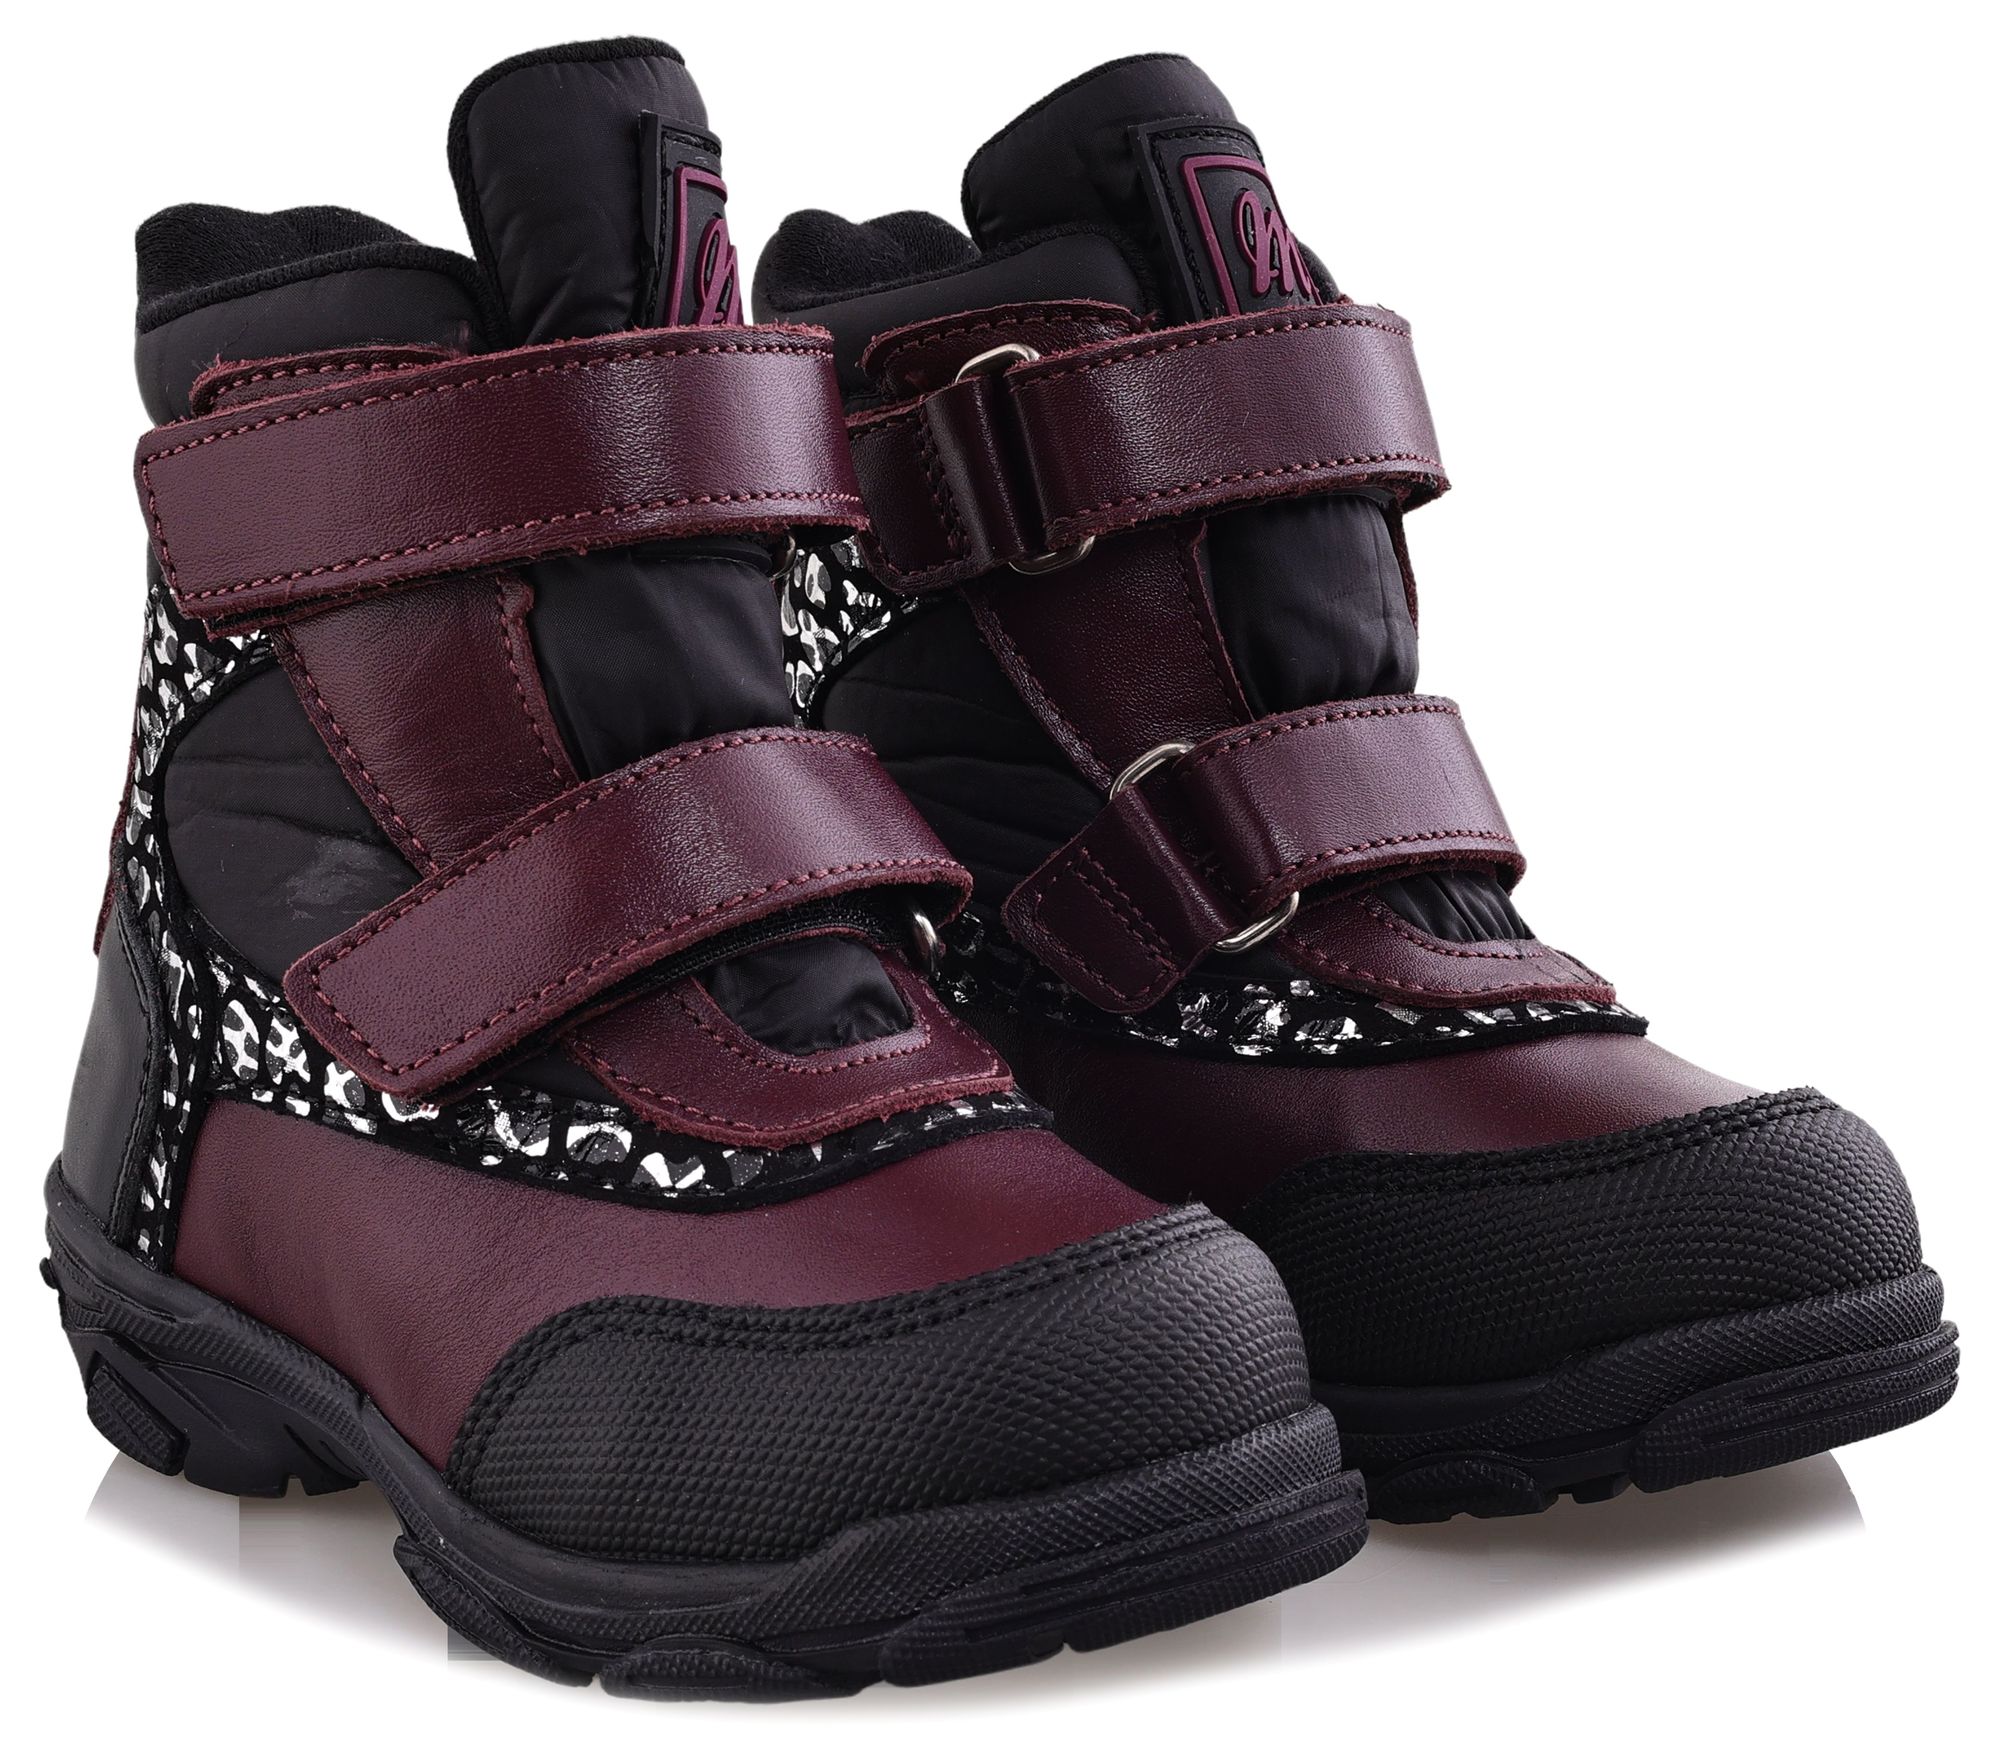 Ботинки Minimen для девочек, бордовые, размер 22, 2655-52-23B-03 minimen ботинки зимние 2187